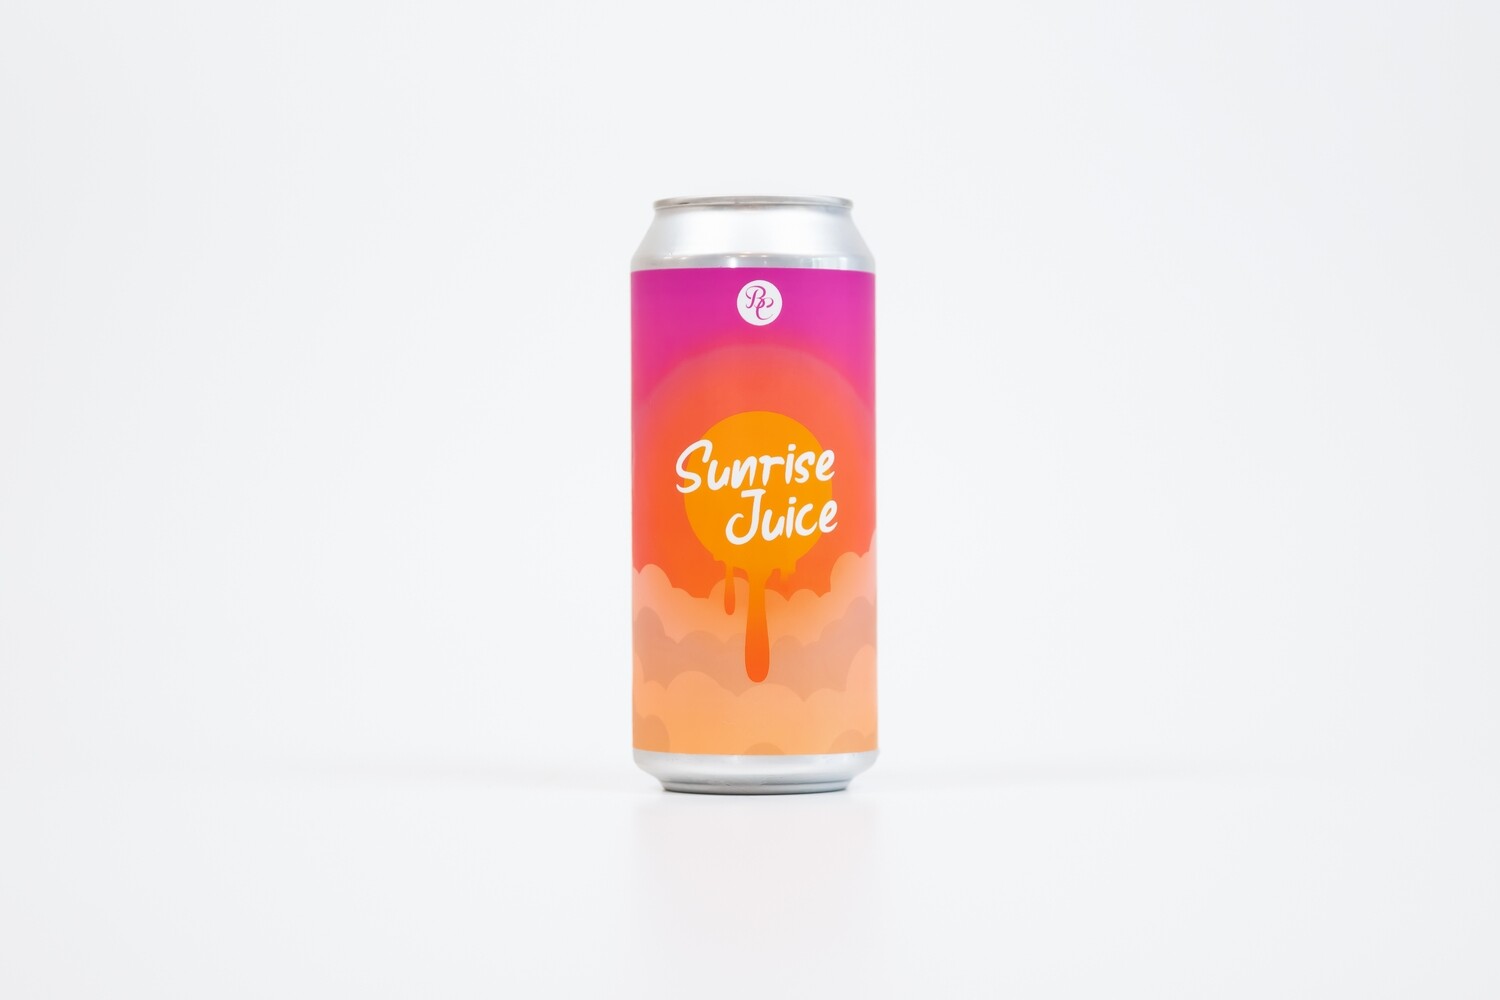 Sunrise Juice 16oz Cans - 4pk